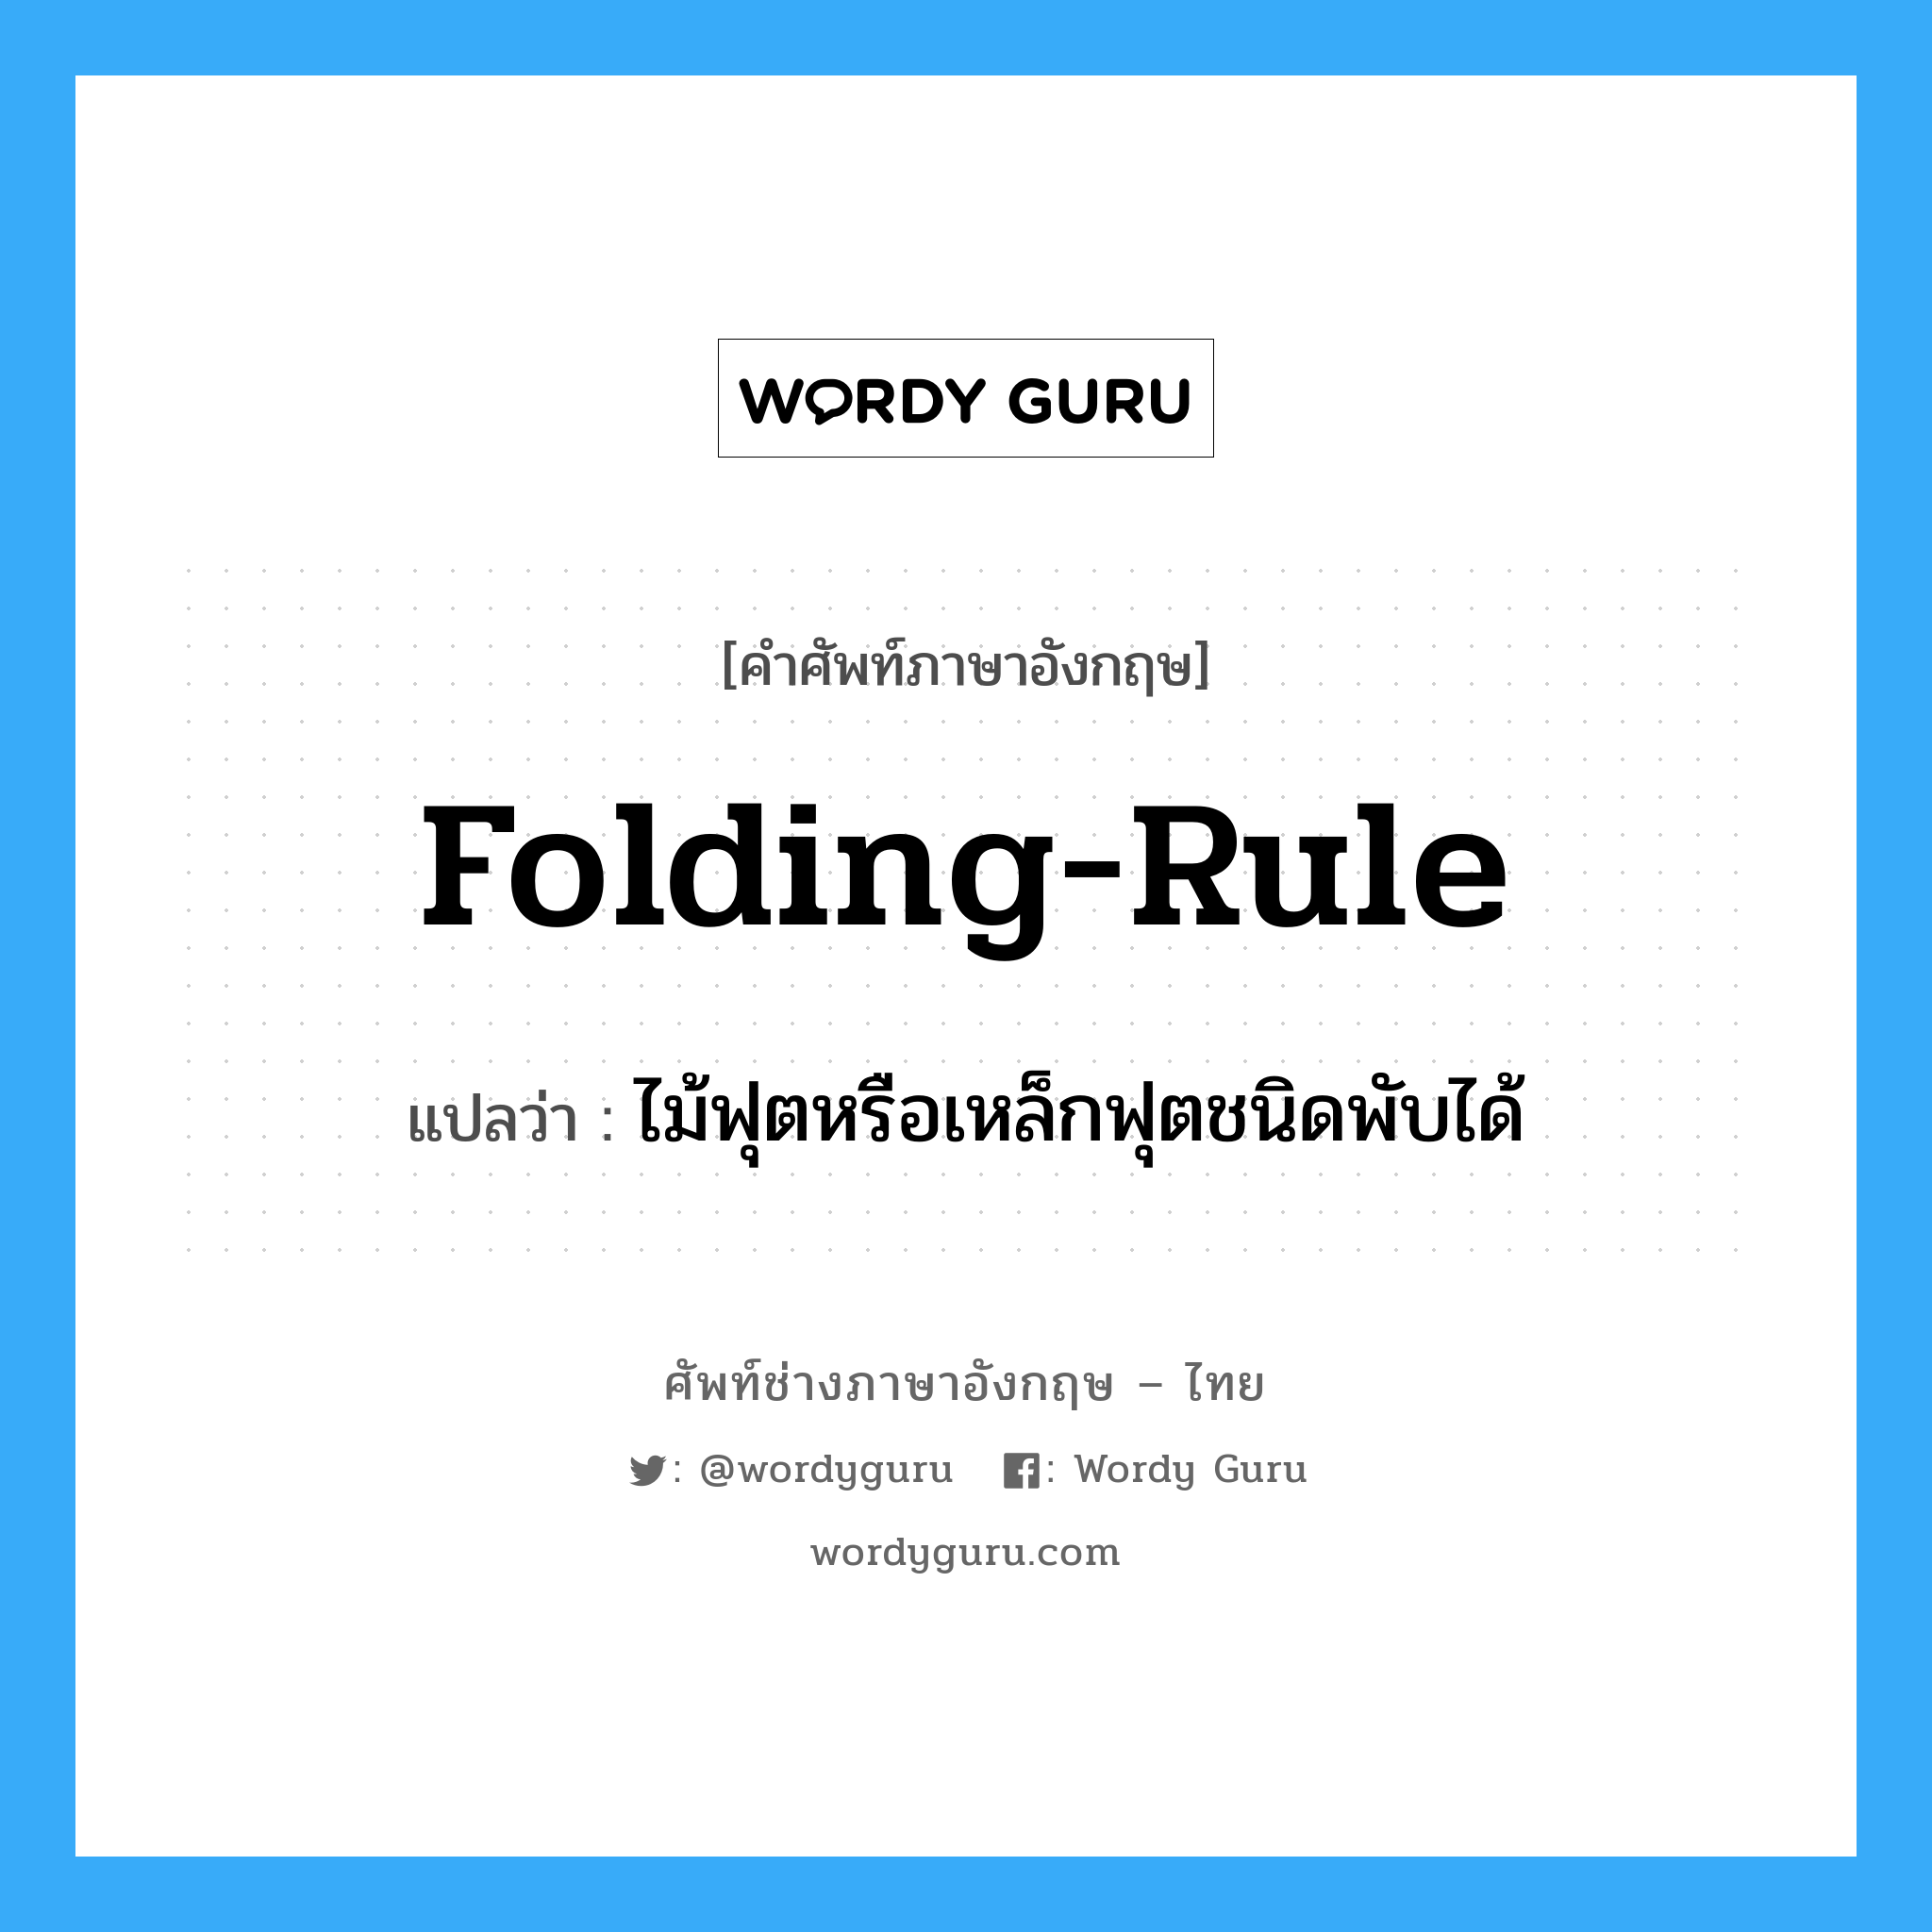 folding-rule แปลว่า?, คำศัพท์ช่างภาษาอังกฤษ - ไทย folding-rule คำศัพท์ภาษาอังกฤษ folding-rule แปลว่า ไม้ฟุตหรือเหล็กฟุตชนิดพับได้